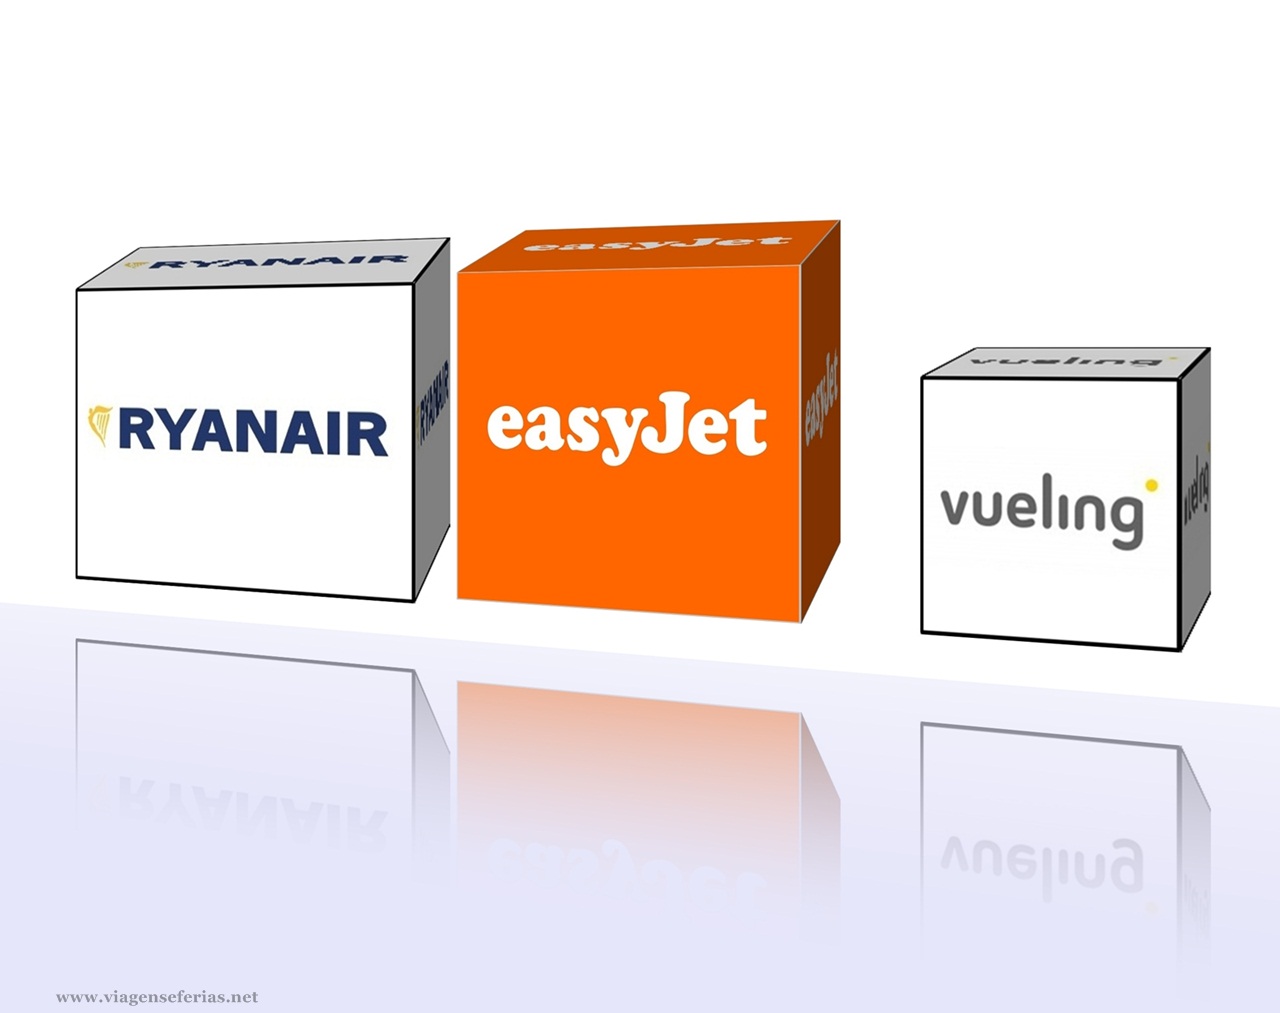 3 Companhias com mais novas rotas: Ryanair, easyJet, Vueling